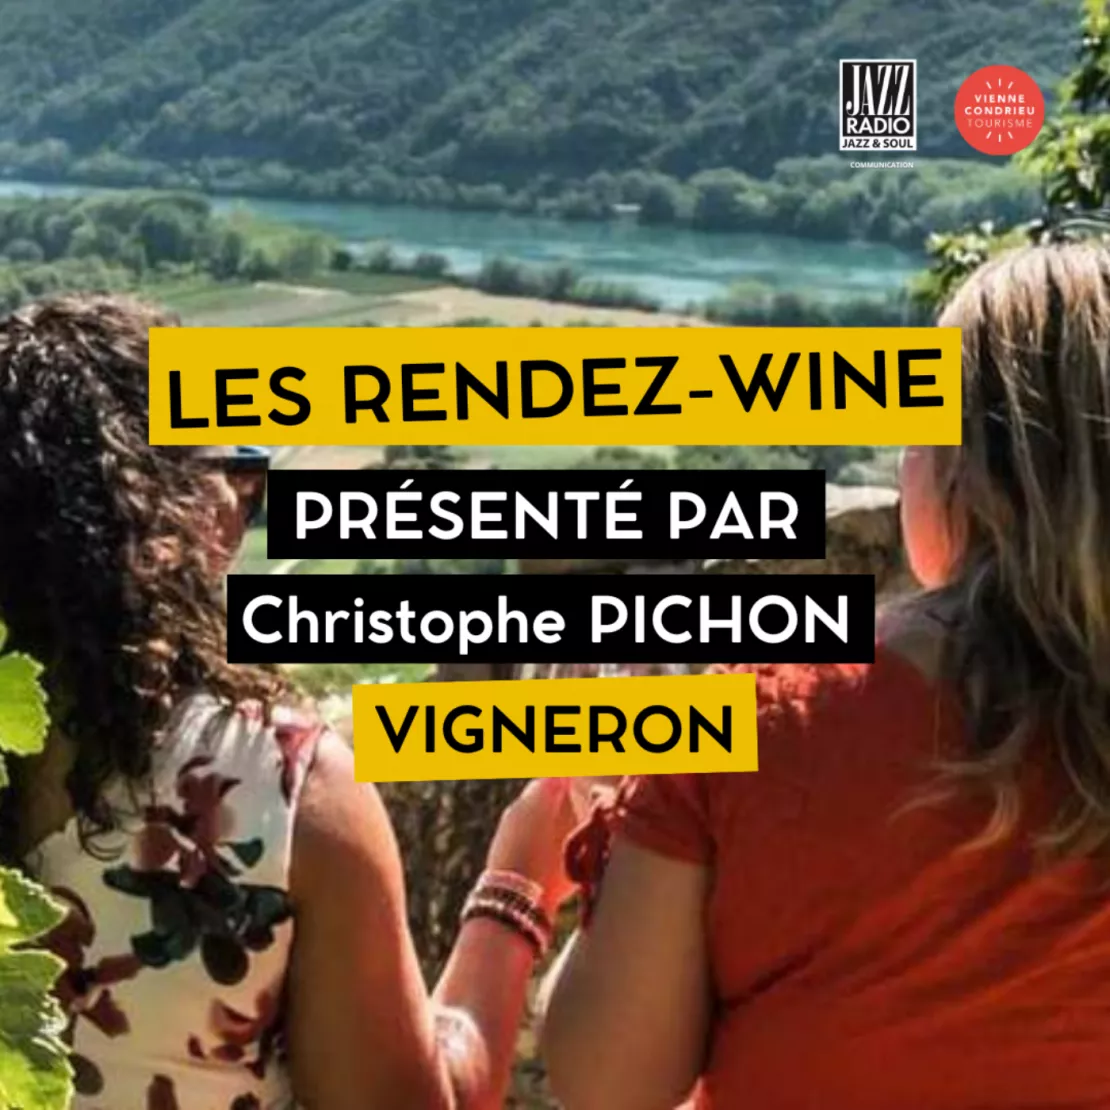 Les Rendez-Wine à Vienne Condrieu : Christophe Pichon vigneron, nous en parle !